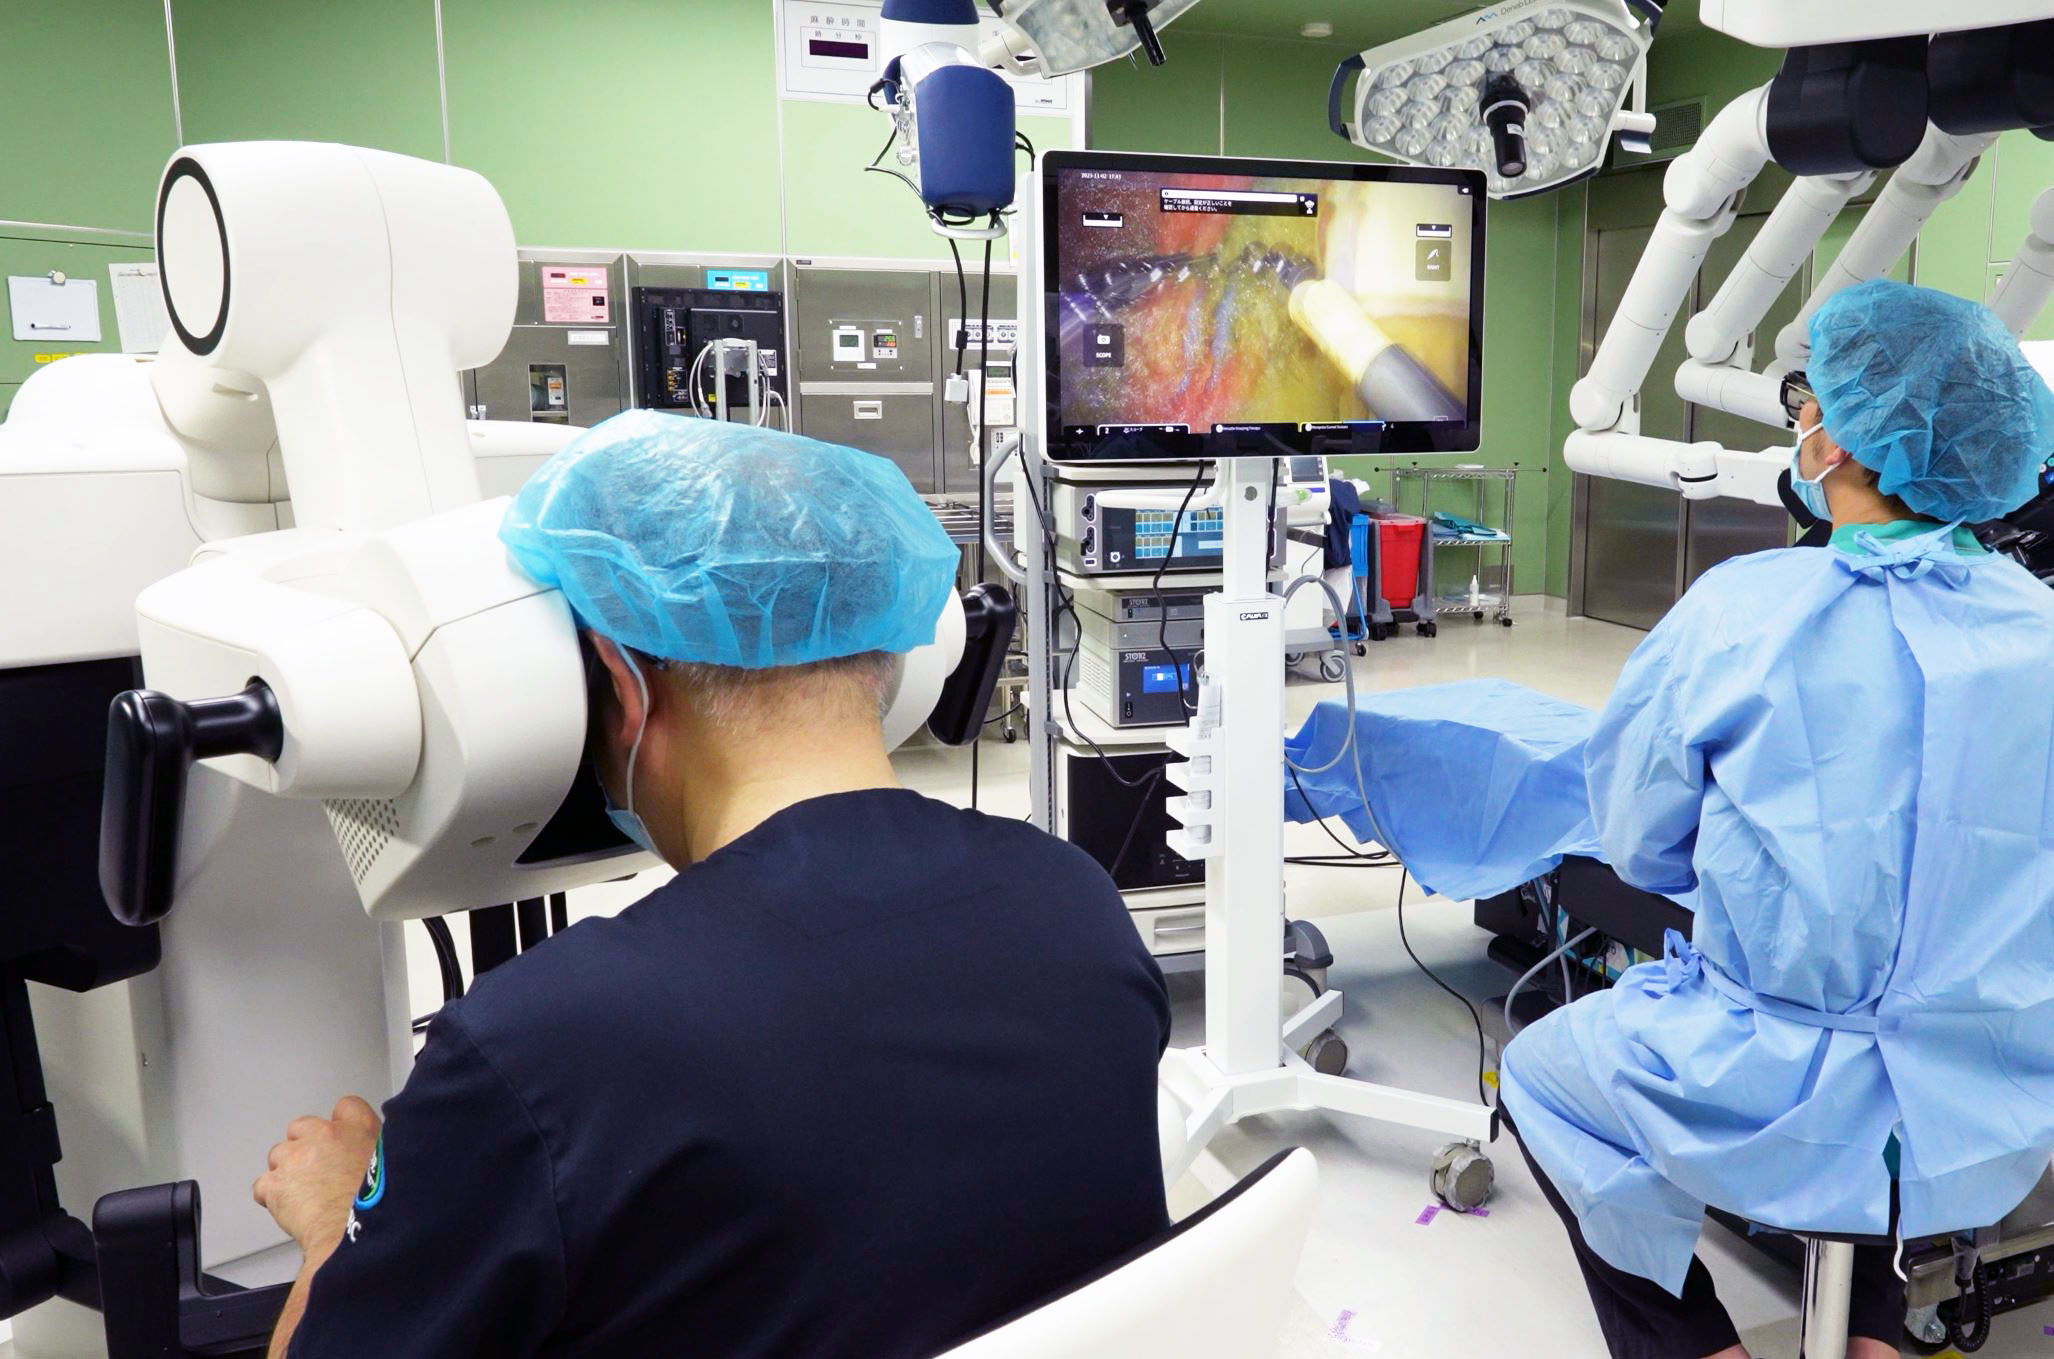 达擎“机器人手术实时 3D 解决方案”将执刀医师在控制台看到的 3D 影像及视野，同步分享给手术室内的医疗团队，强化沟通效率，使手术更精准和安全